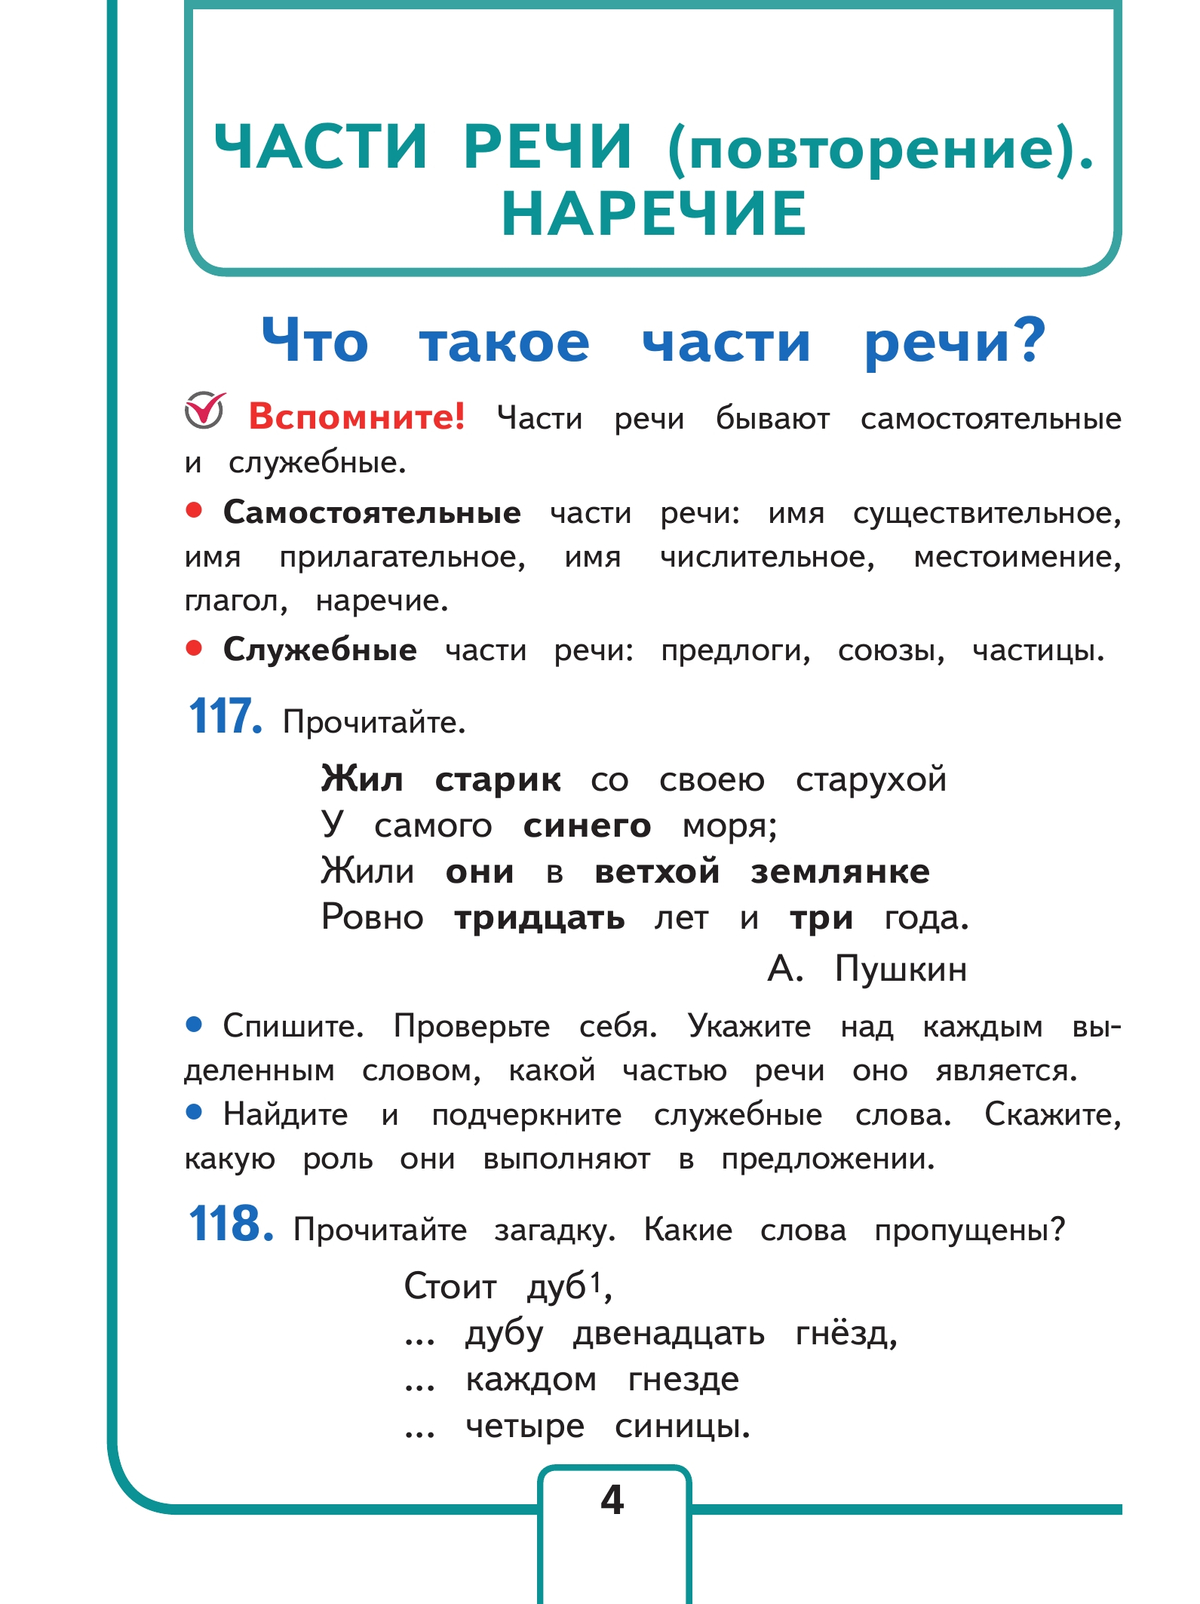 Русский язык. 4 класс. Учебное пособие. В 5 ч. Часть 2 (для слабовидящих обучающихся) 7